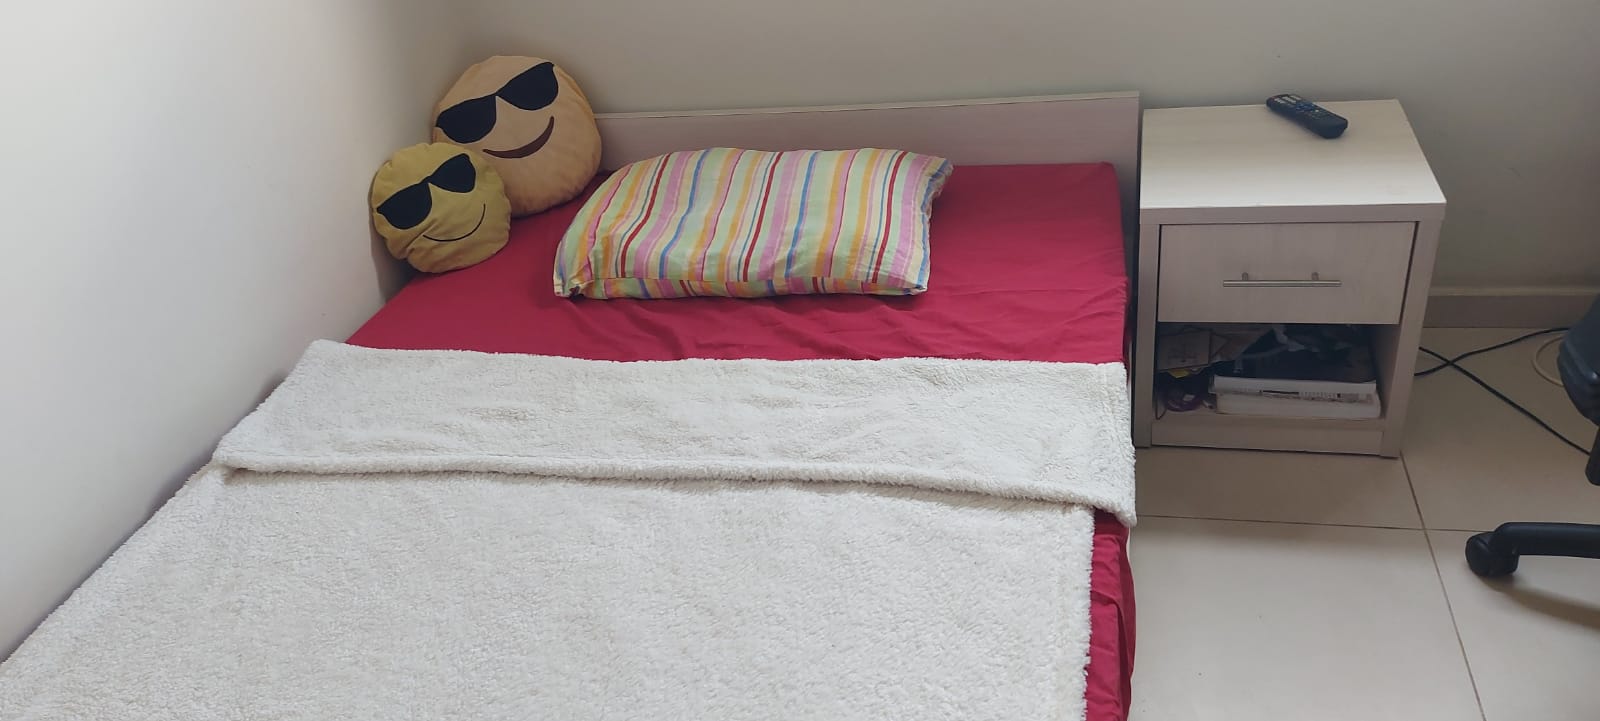 תמונה 2 ,מיטה וחצי  + מזרן- נוער  למכירה בפתח תקווה ריהוט  מיטות